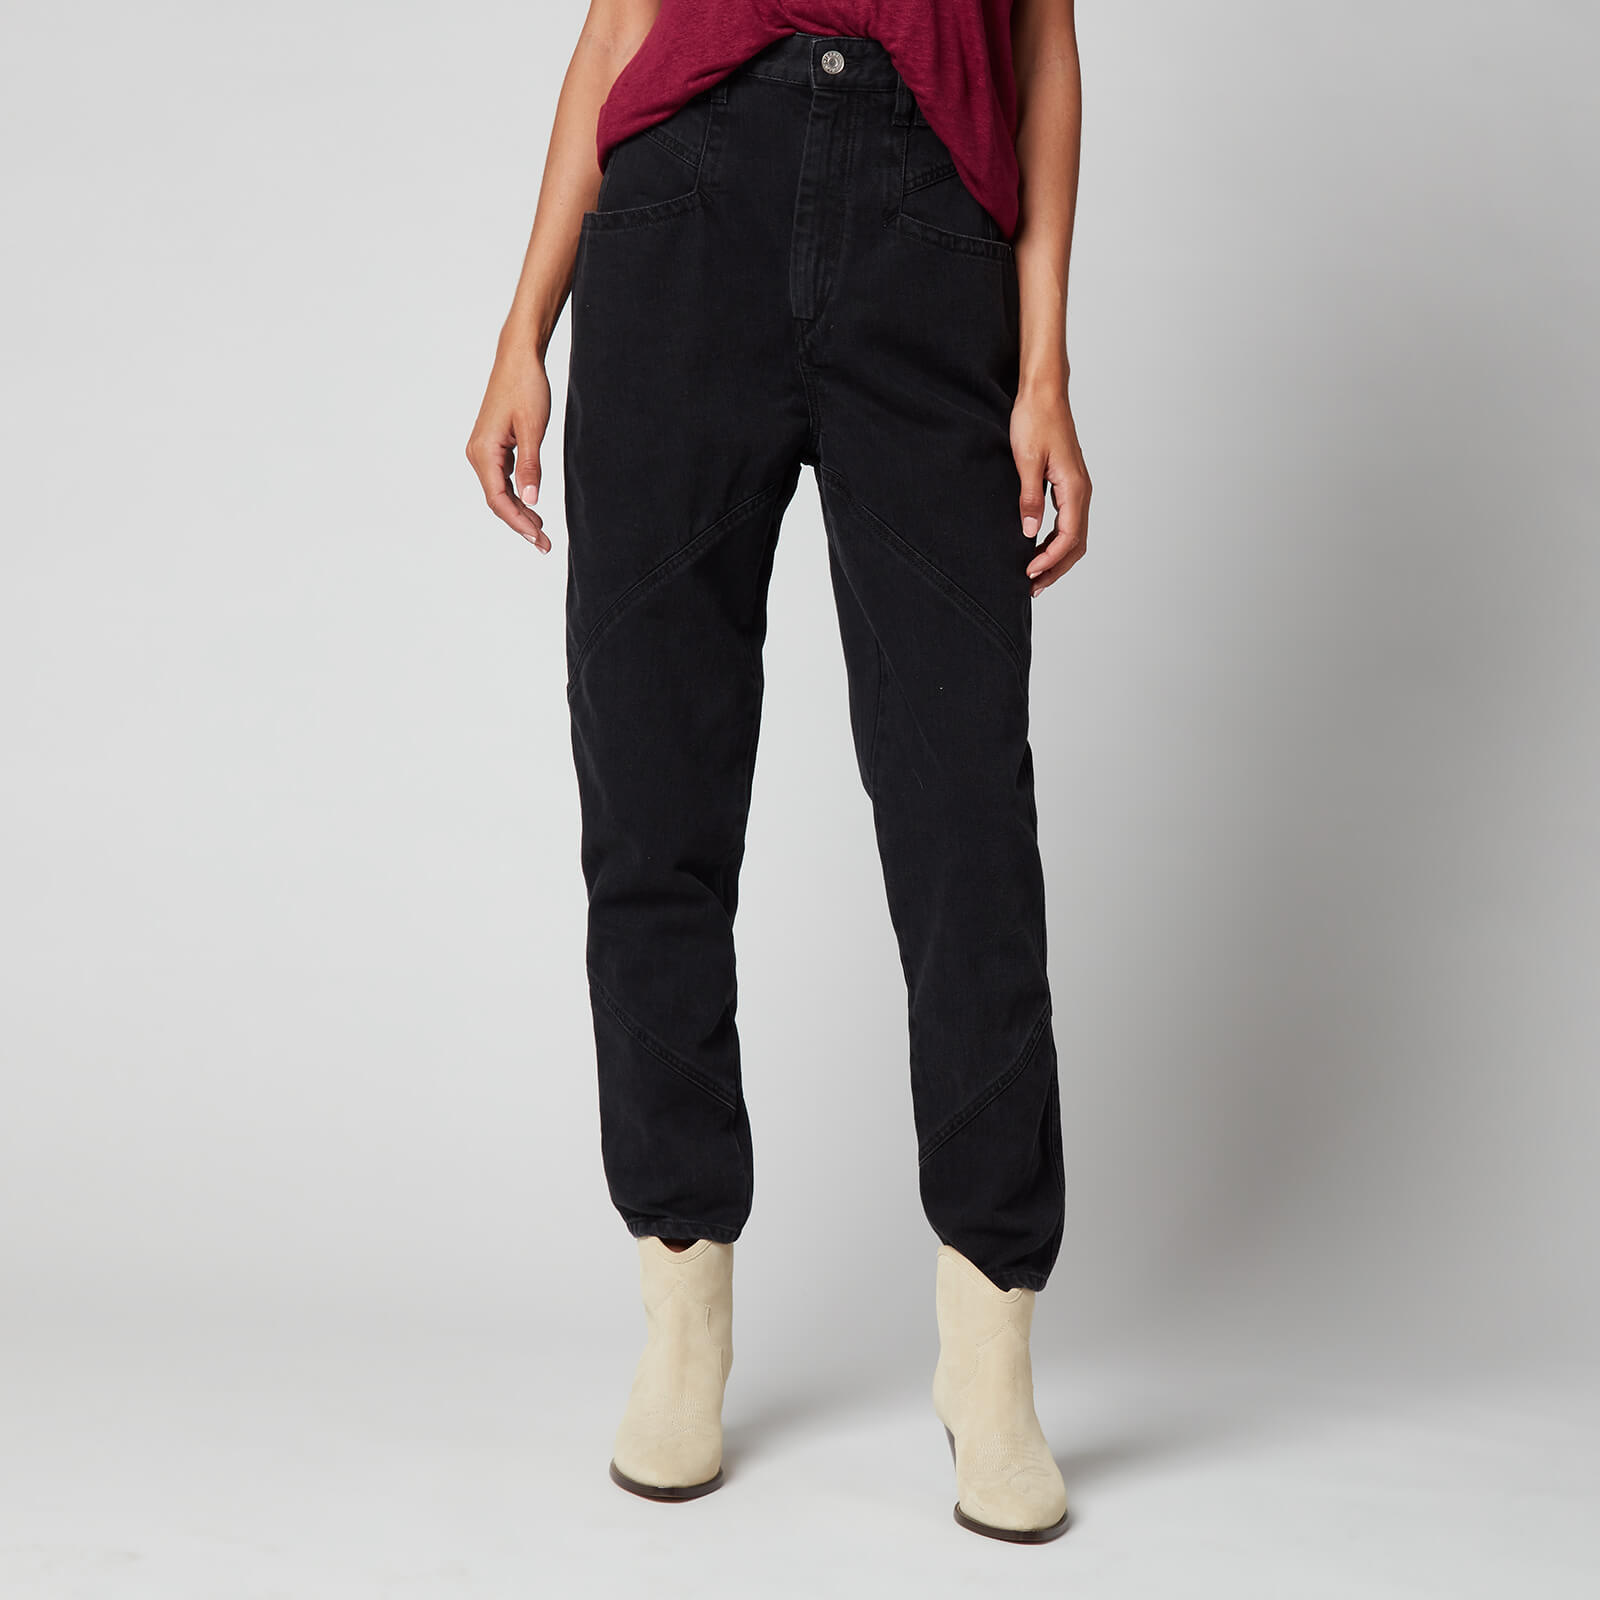 Isabel Marant Women's Nadeloisa Jeans - Black - UK 10